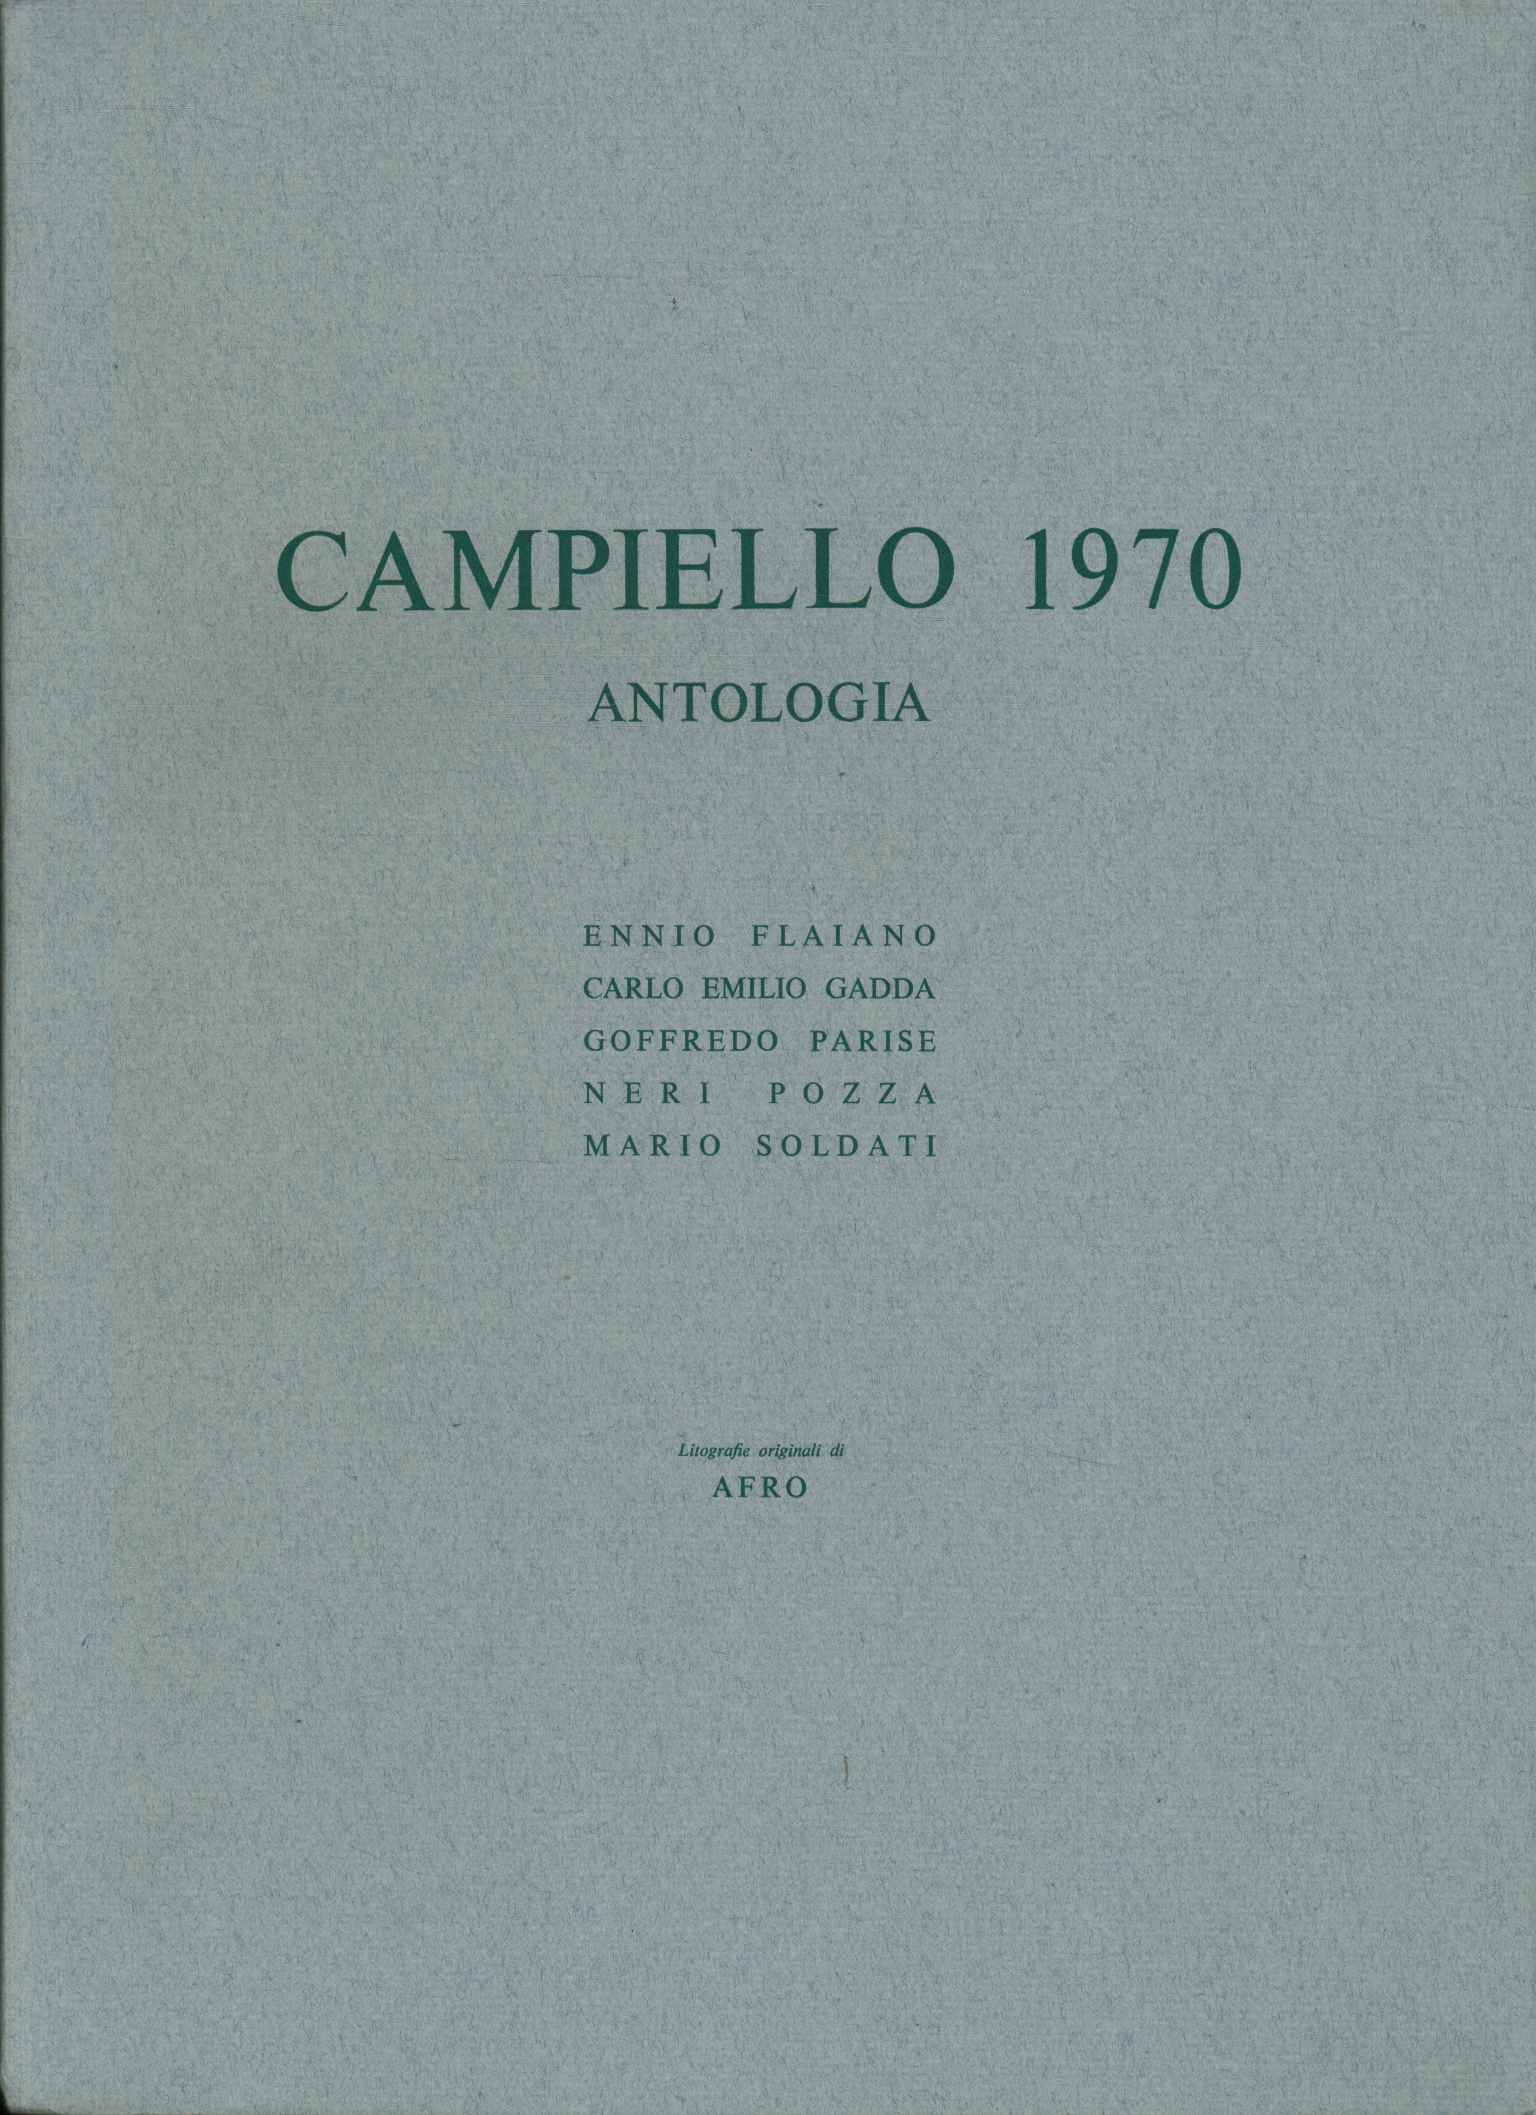 Antología de Campiello 1970